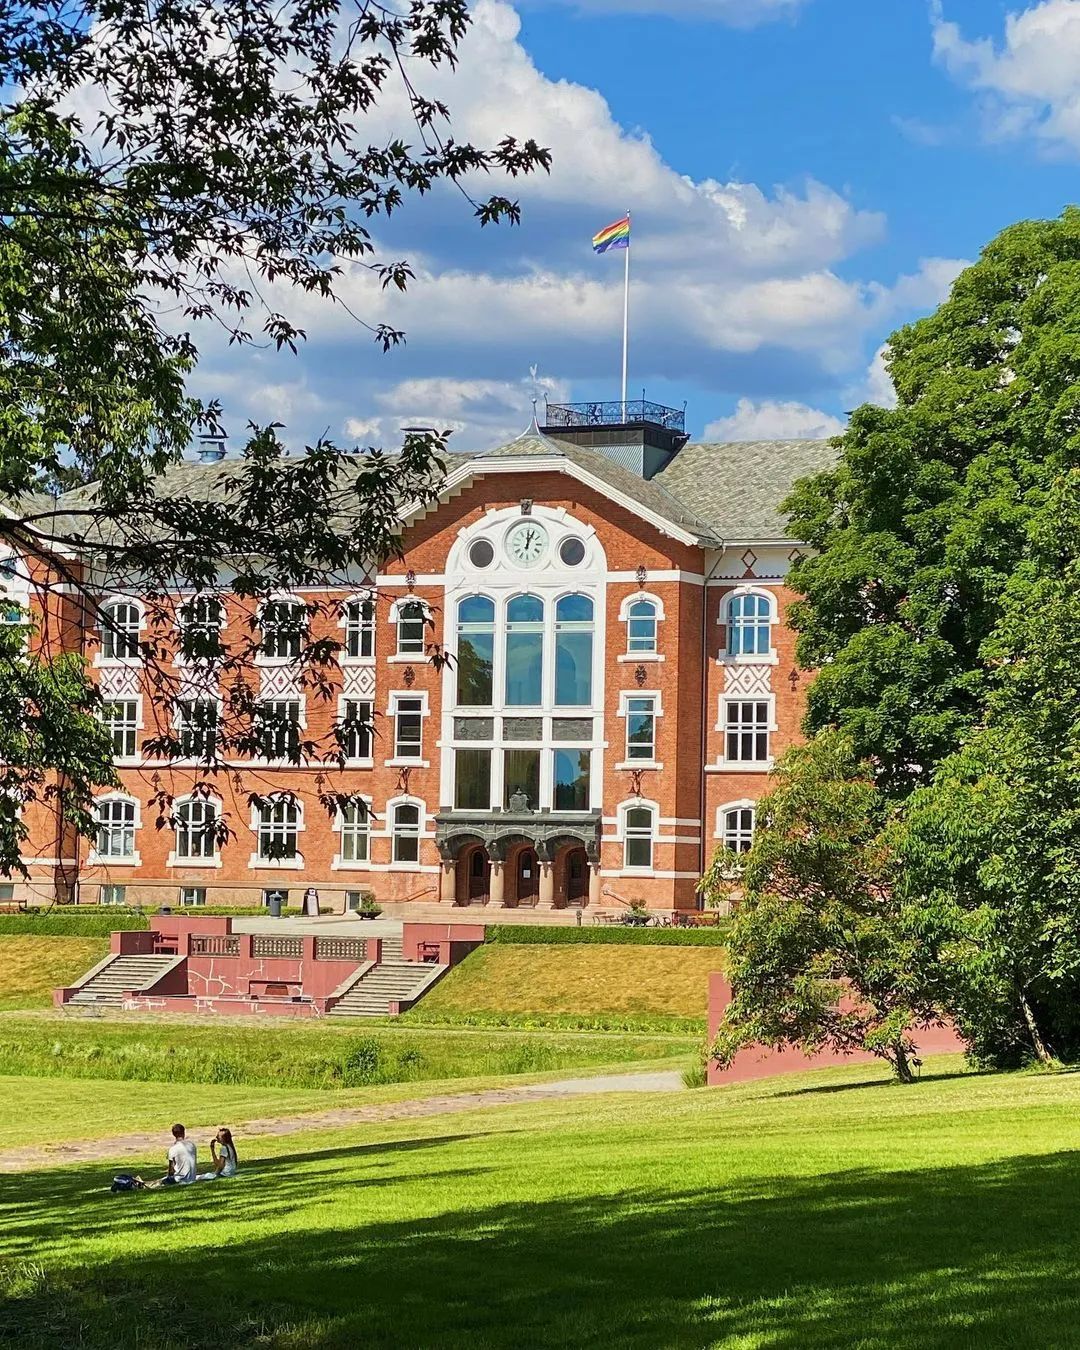 免学费还高颜值,理想中的大学模样,挪威都有!